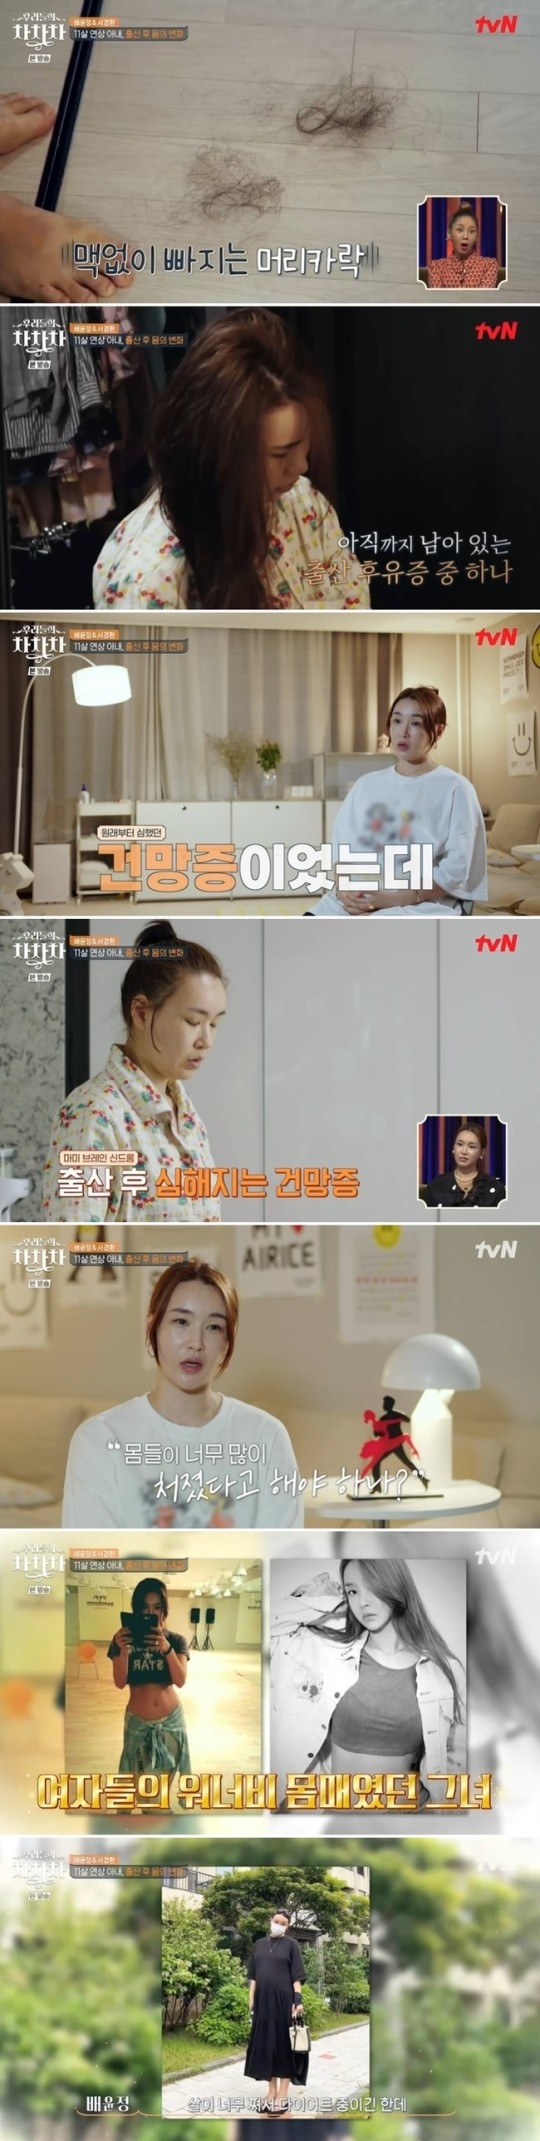 tvN ‘우리들의 차차차’ 방송 캡처